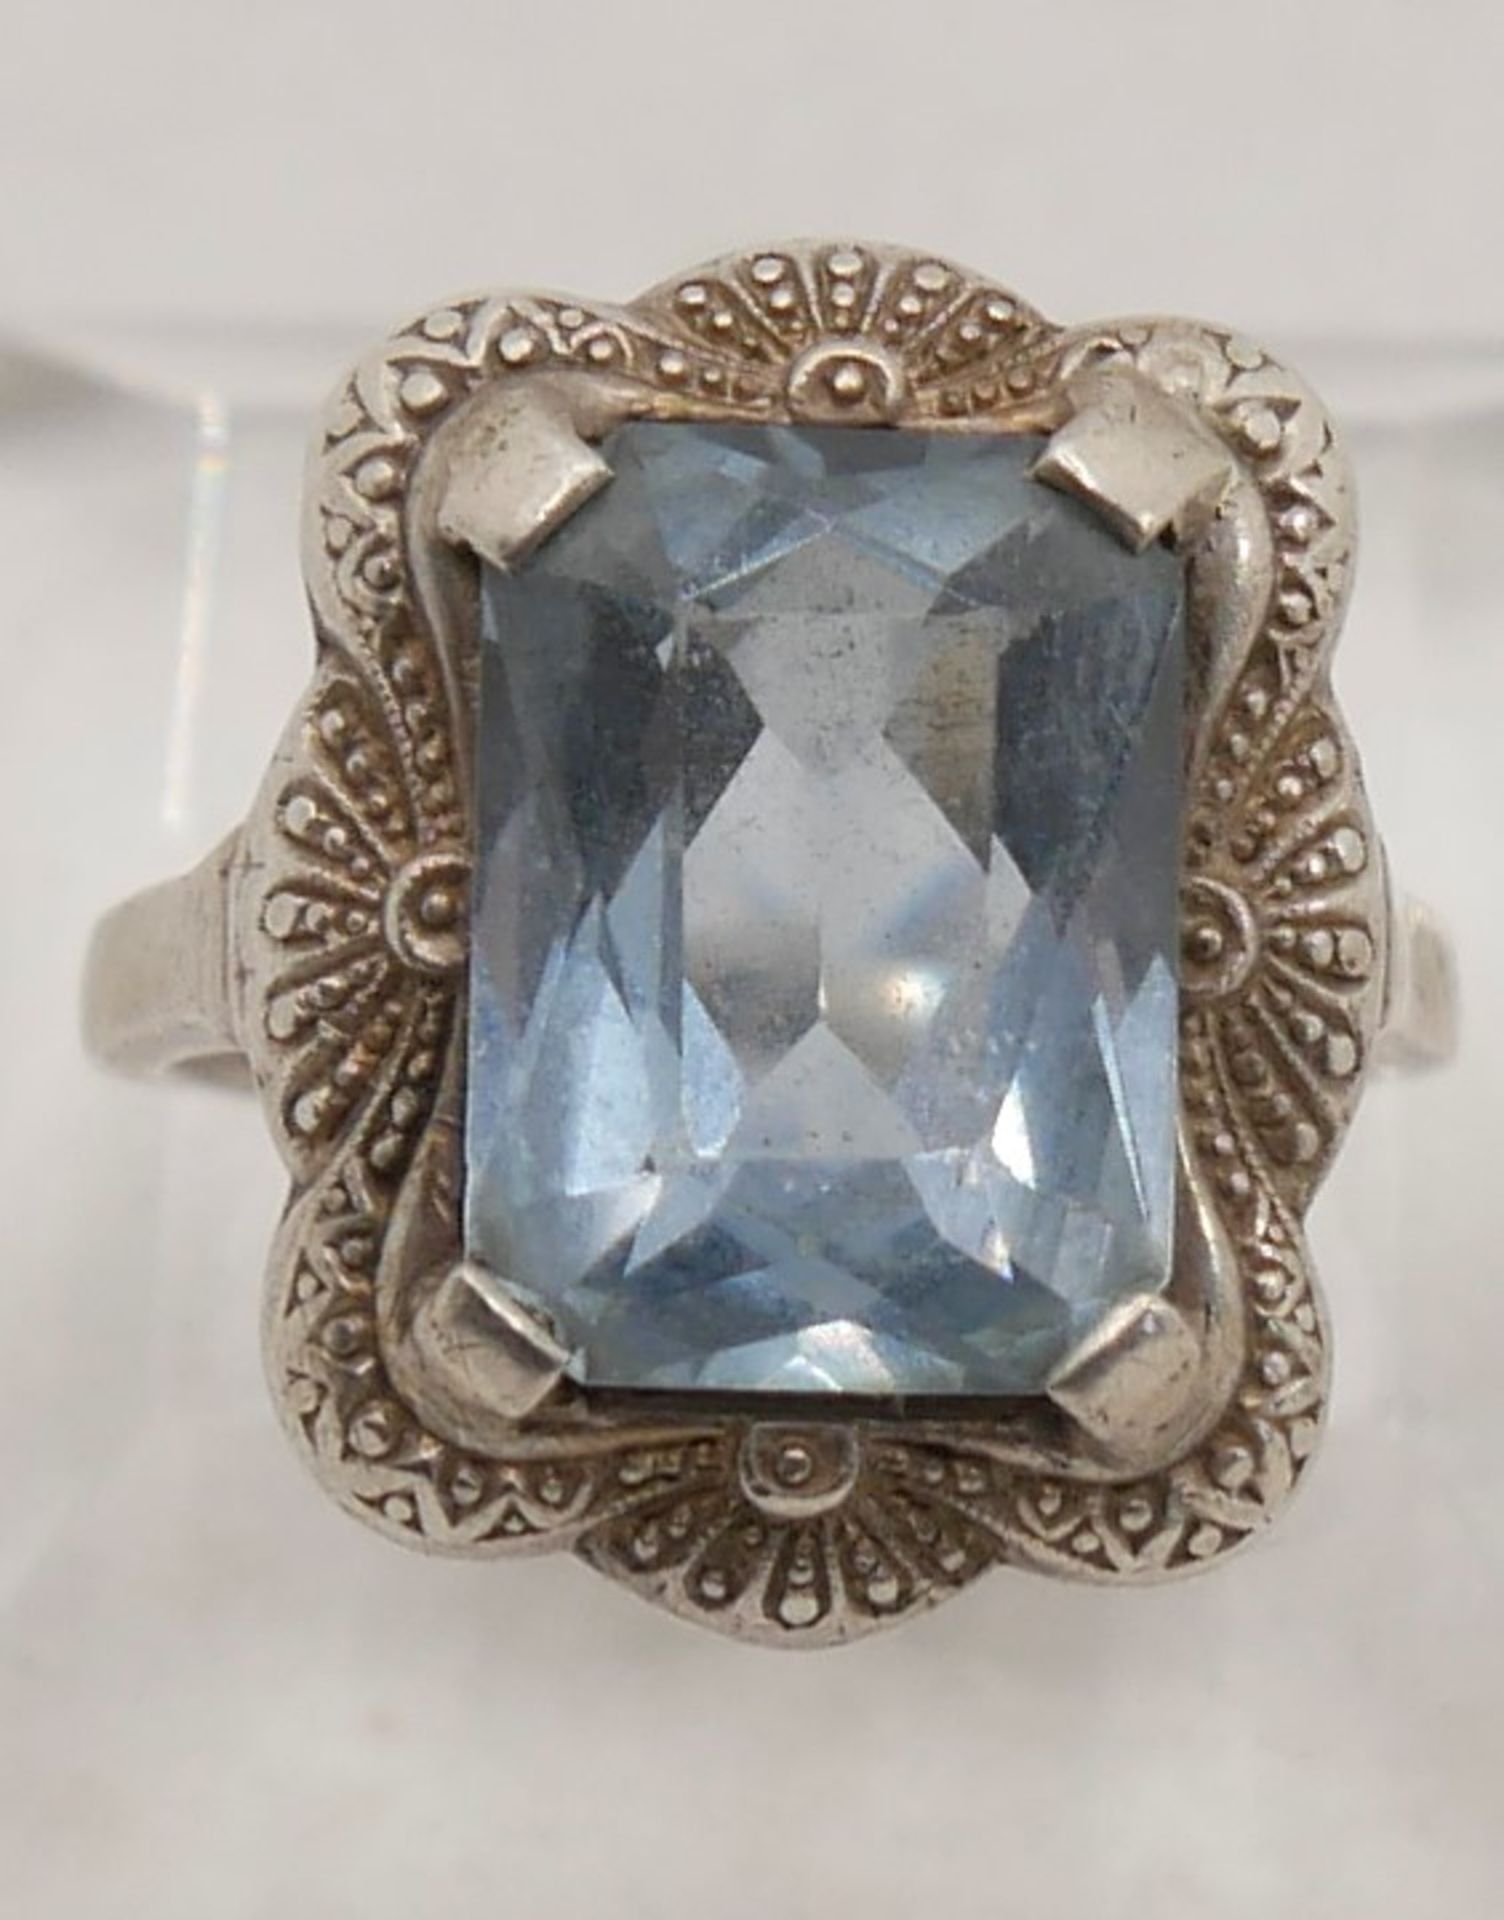 Damenring 835er Silber gepunzt mit hellblauem Glasstein, Ringgröße 56.